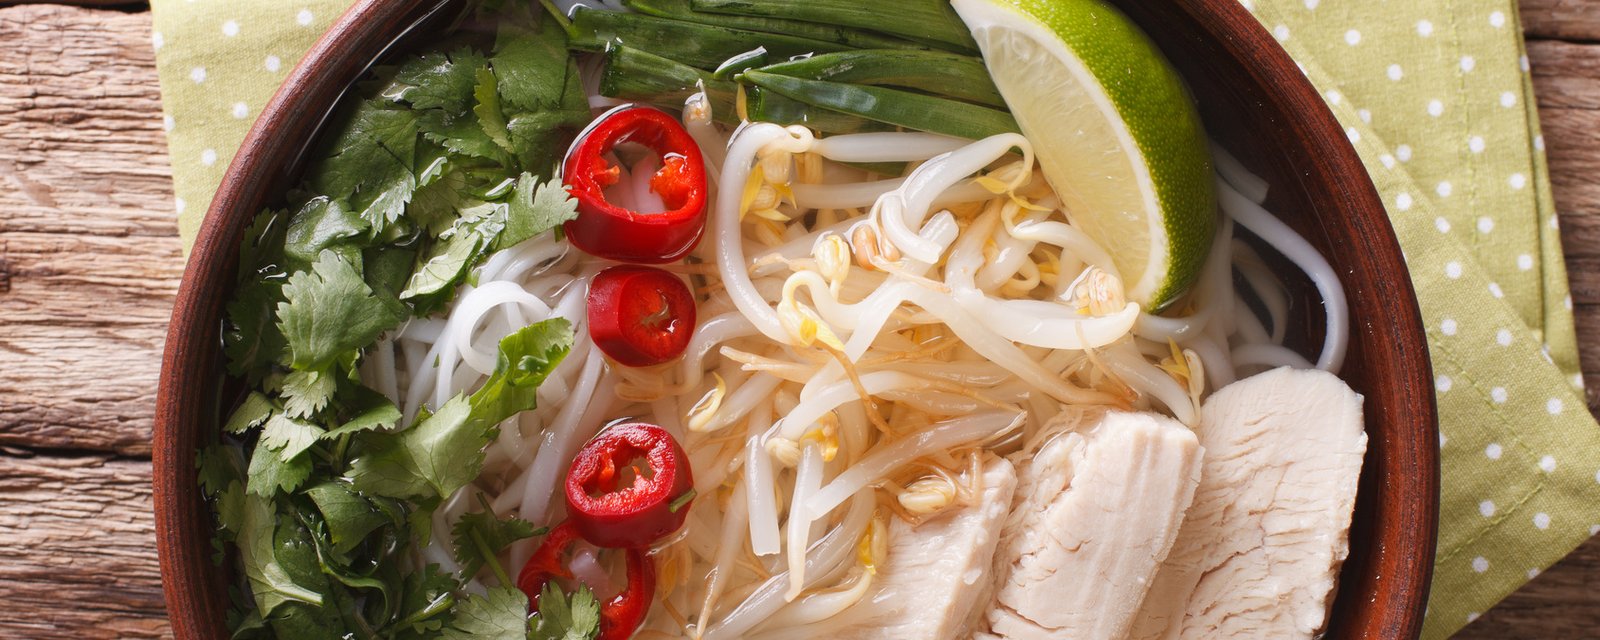 La soupe PHO au poulet, un classique vietnamien réinventé pour la mijoteuse!